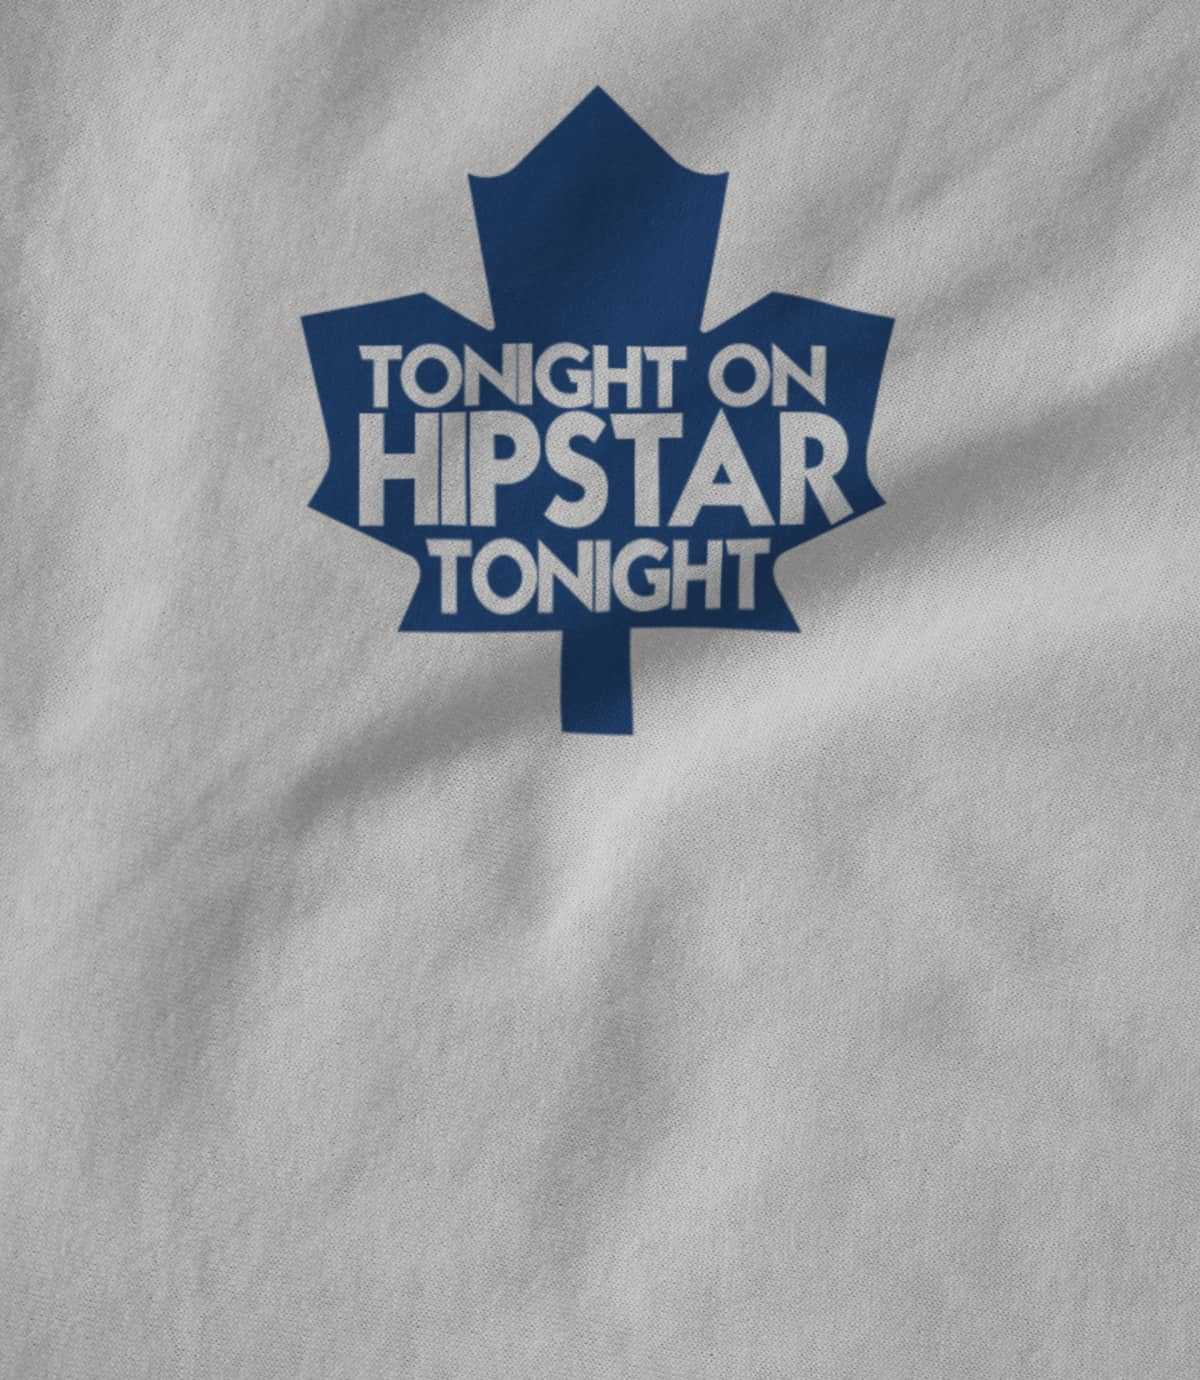 Tonight On HipStar Tonight